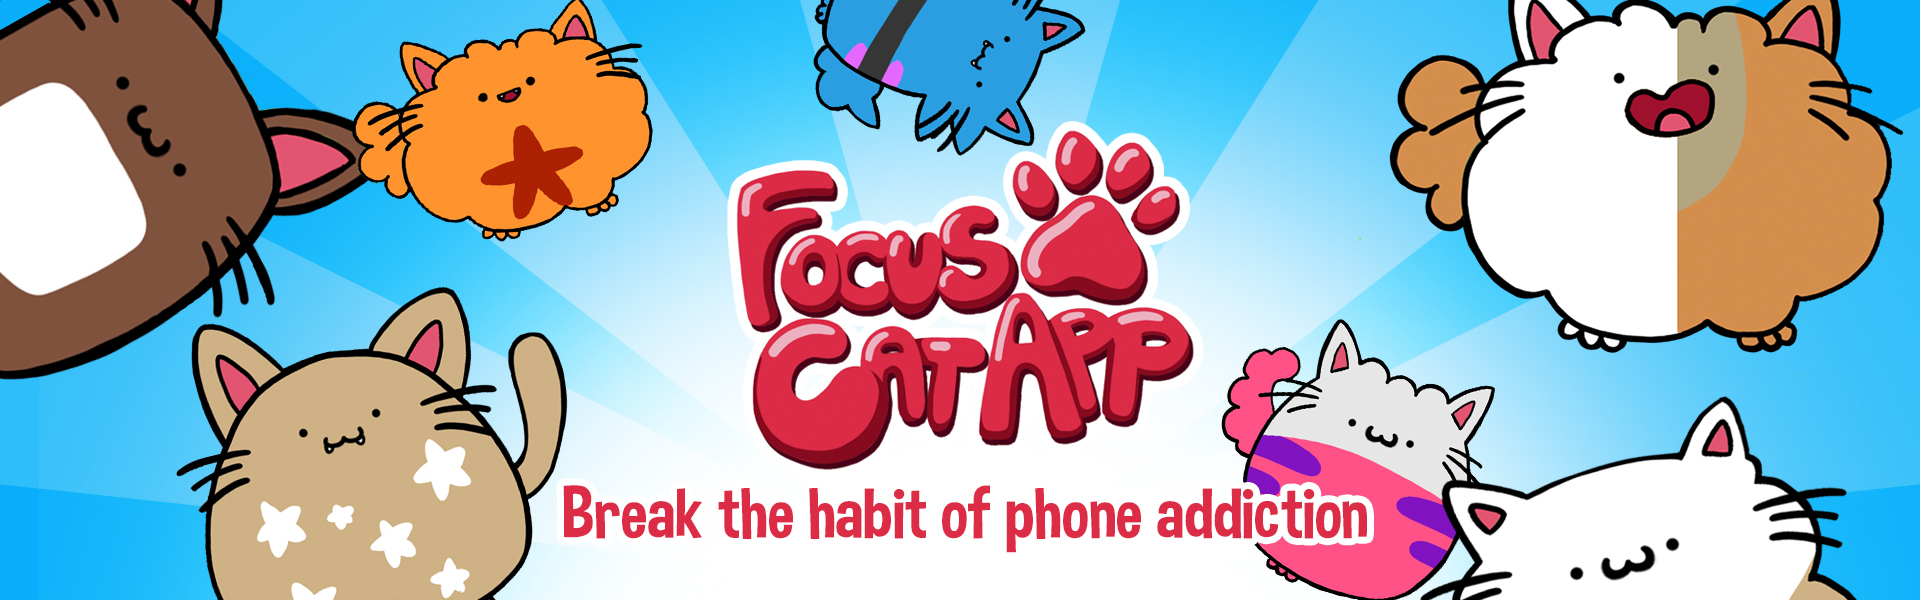 focus cat app per concentrarsi